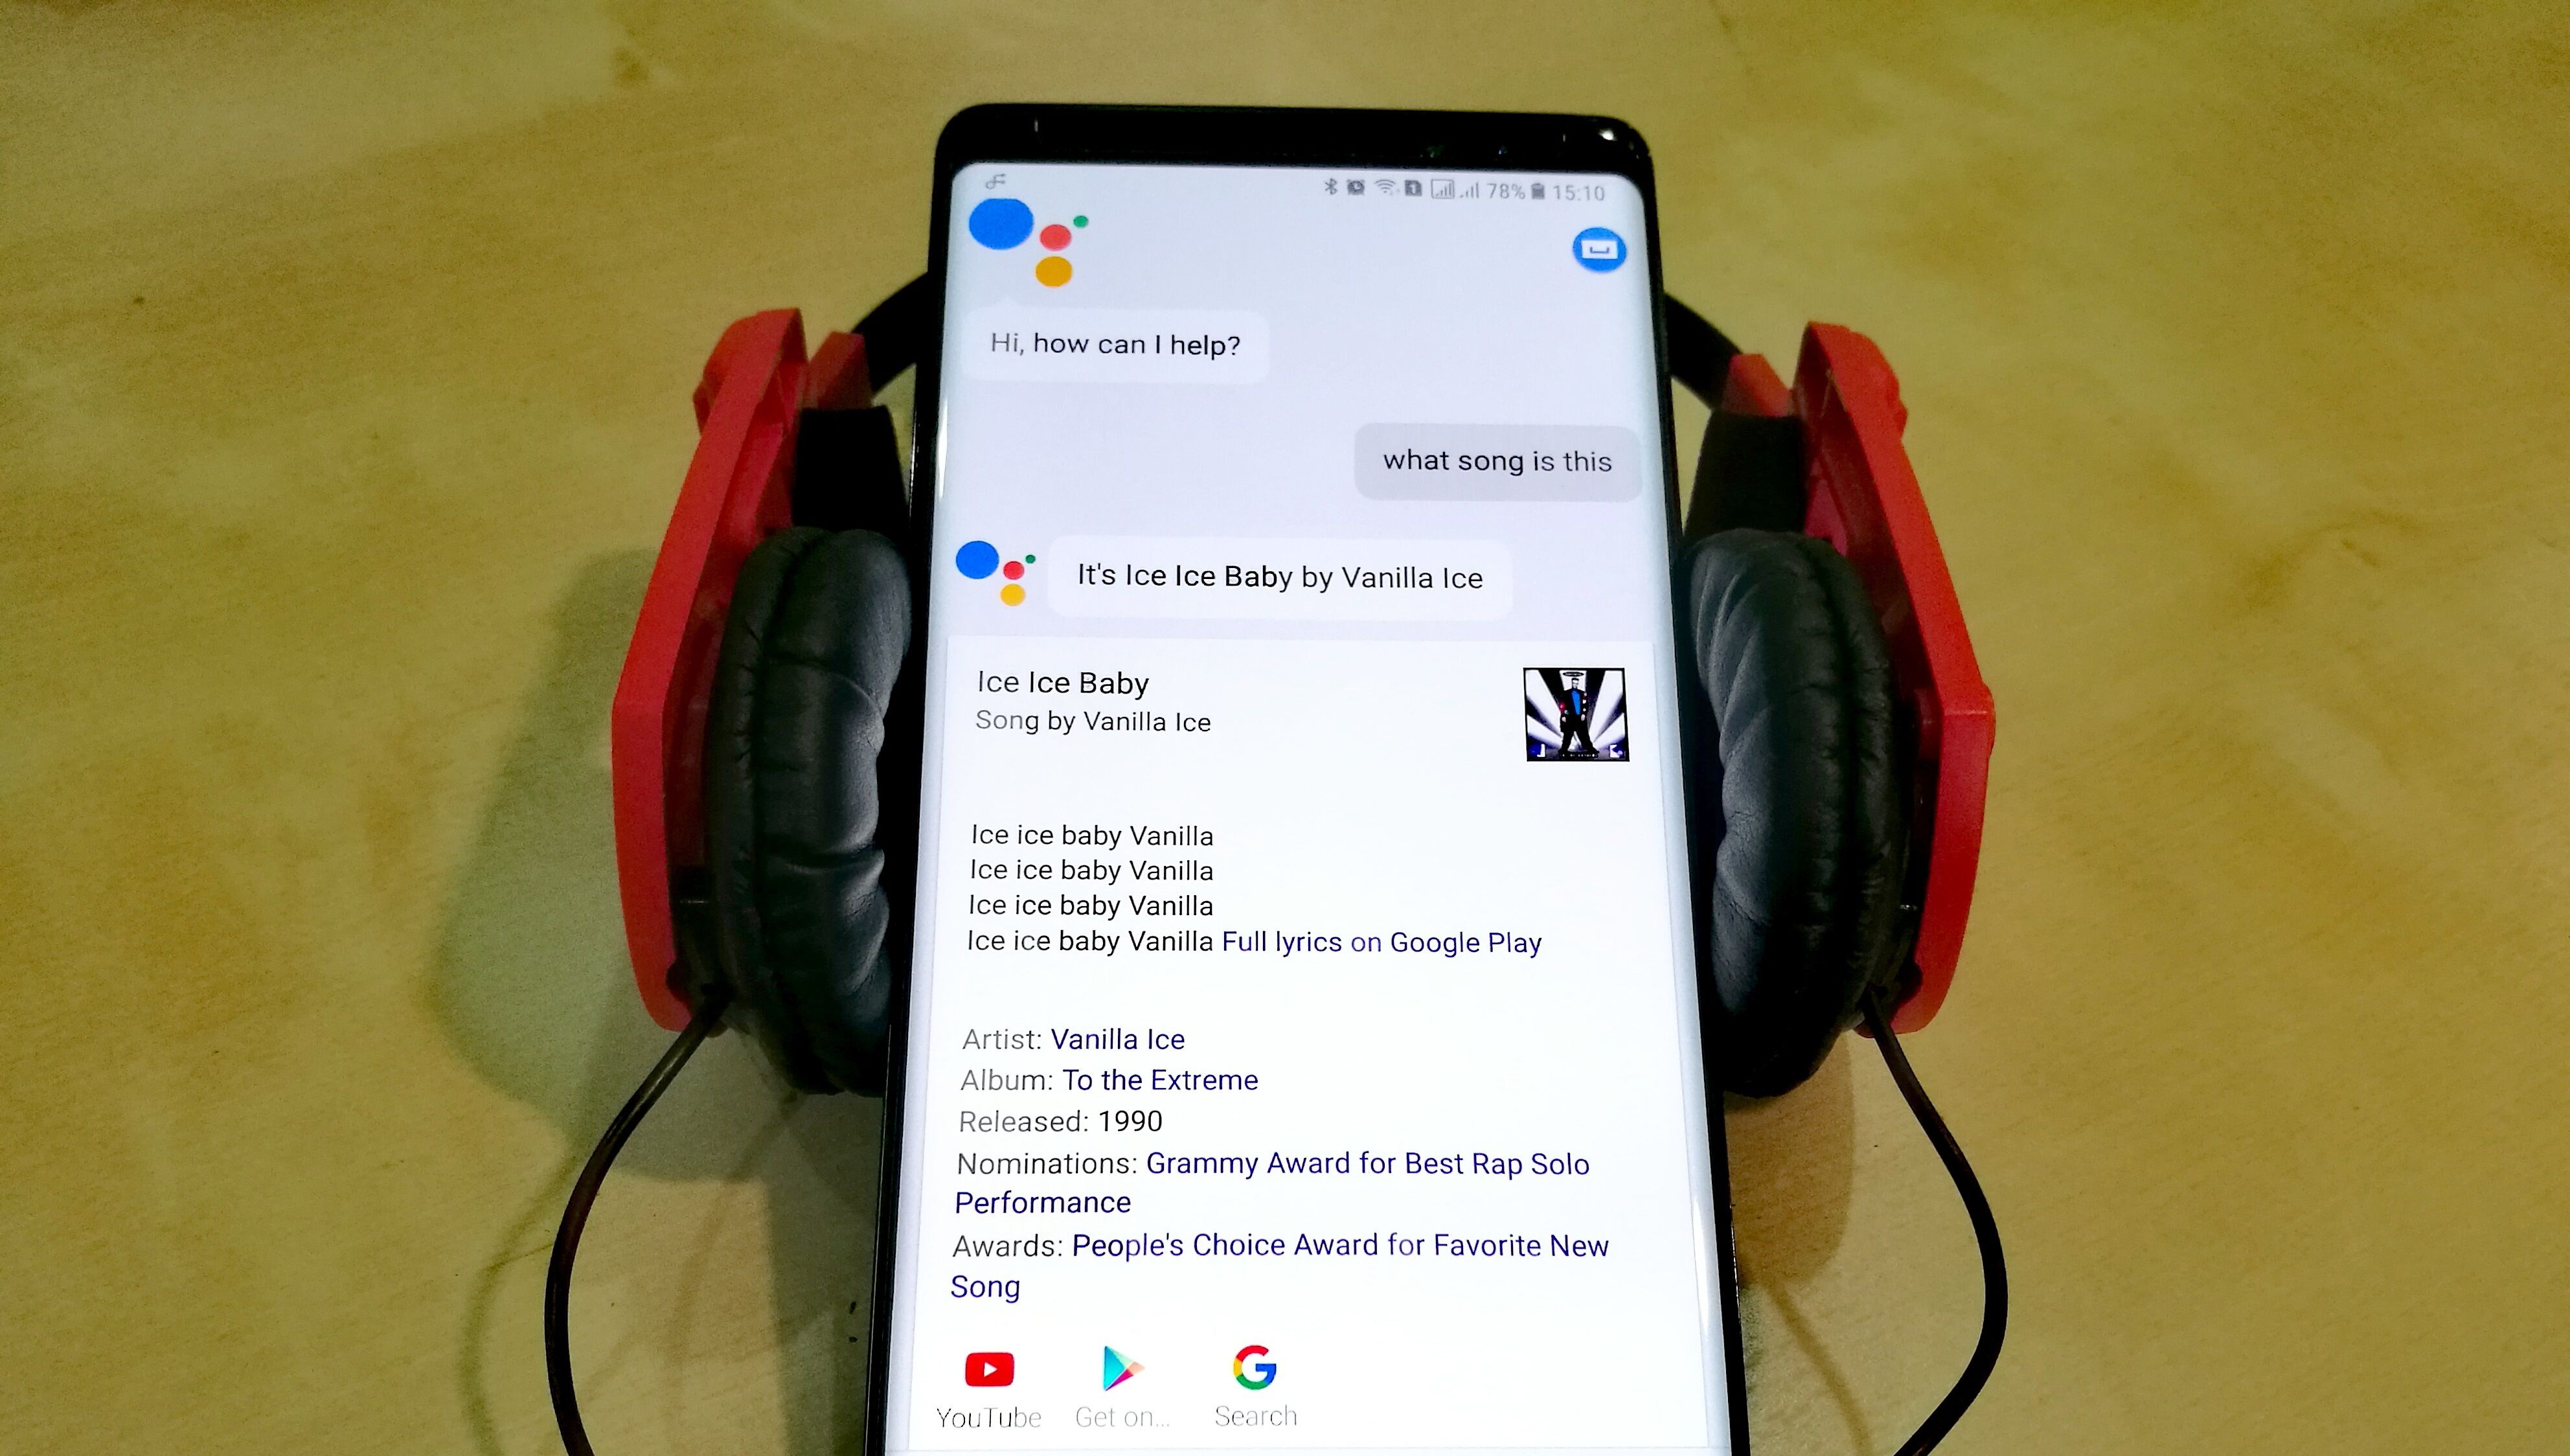 Google Assistant ในมือถือ Android หลายรุ่นสามารถใช้ค้นหาชื่อเพลงได้แล้ว เพลง เกาหลี ญี่ปุ่น ก็ฟังออก